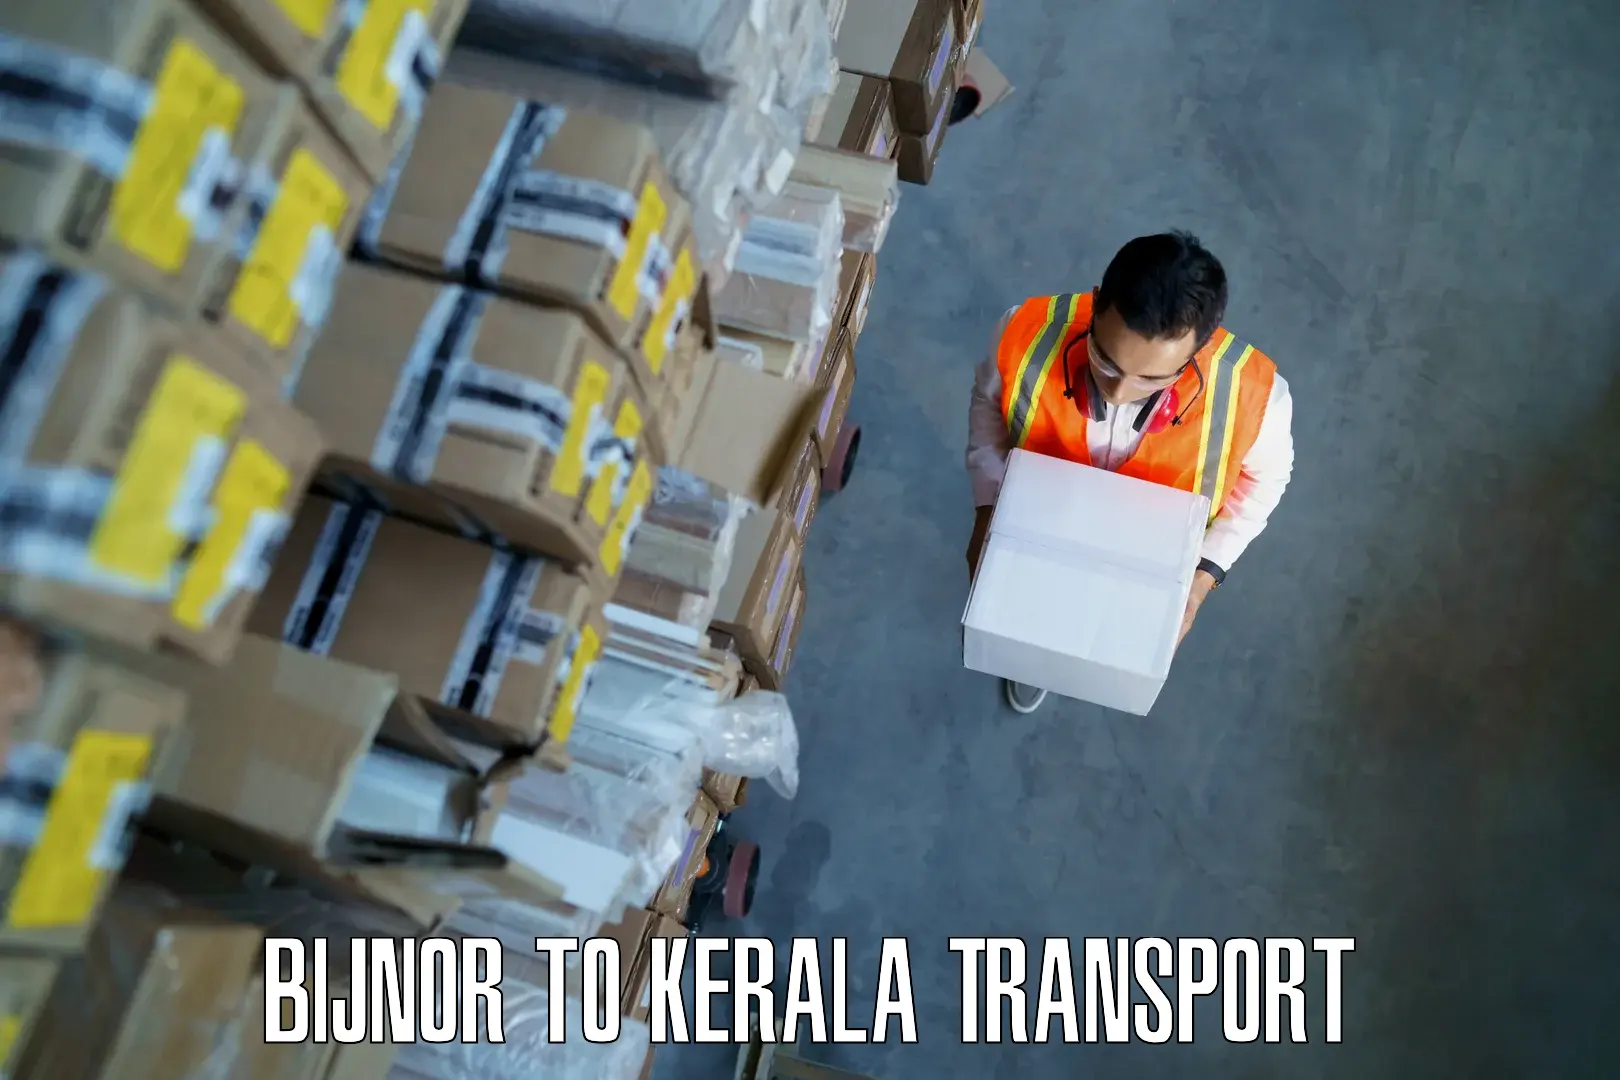 Delivery service Bijnor to Cochin